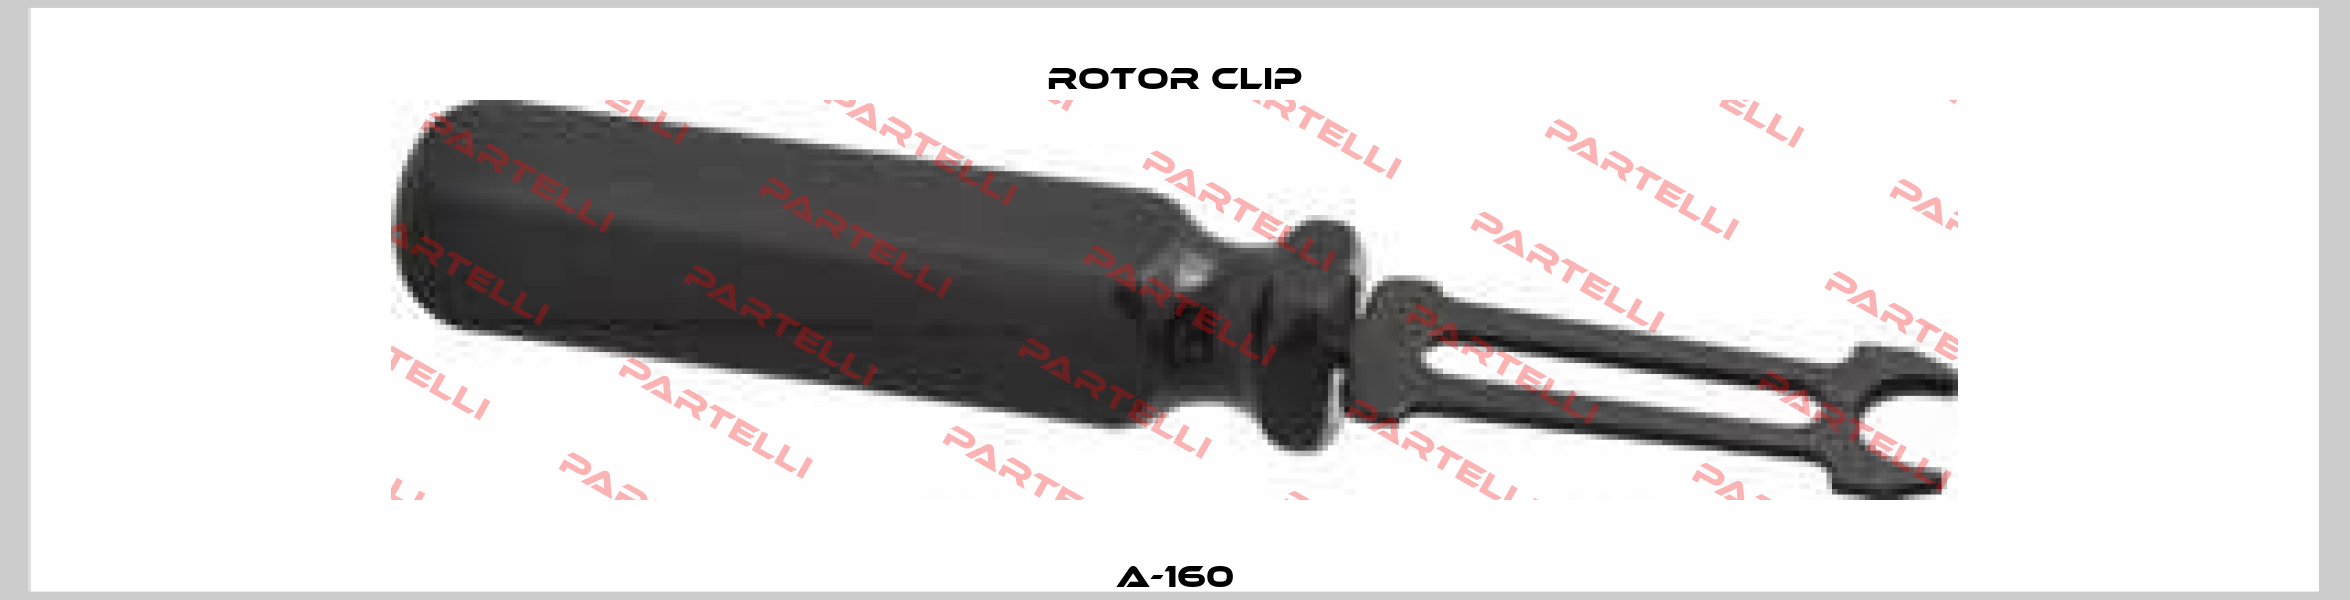 A-160 Rotor Clip